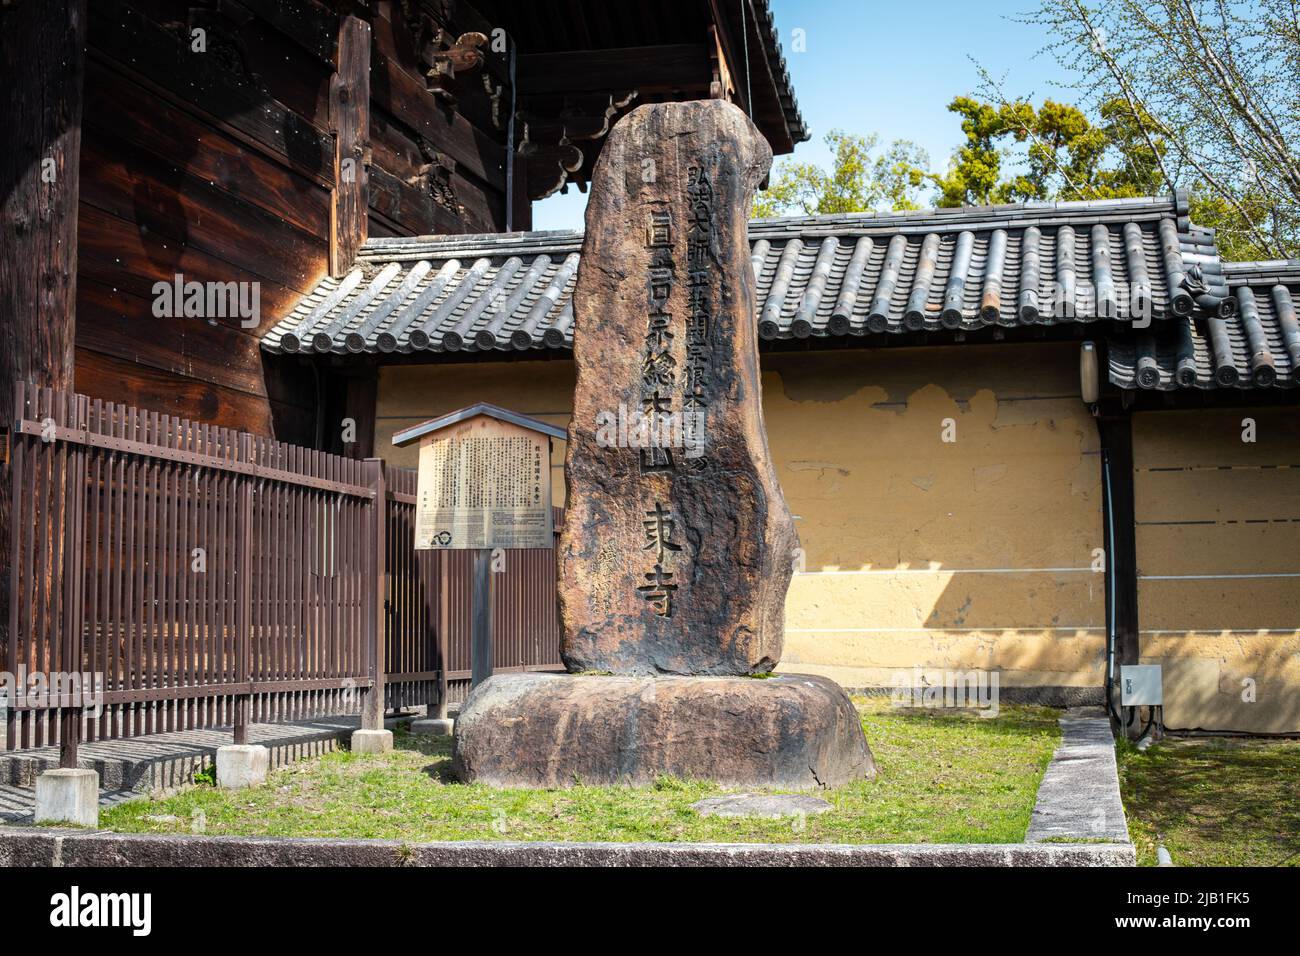 Kyoto, JAPON - avril 2 2021 : le monument à to-ji, temple de Shingon à Minami-ku, en journée ensoleillée. Traduction : le temple principal de la secte Toji Shingon Banque D'Images